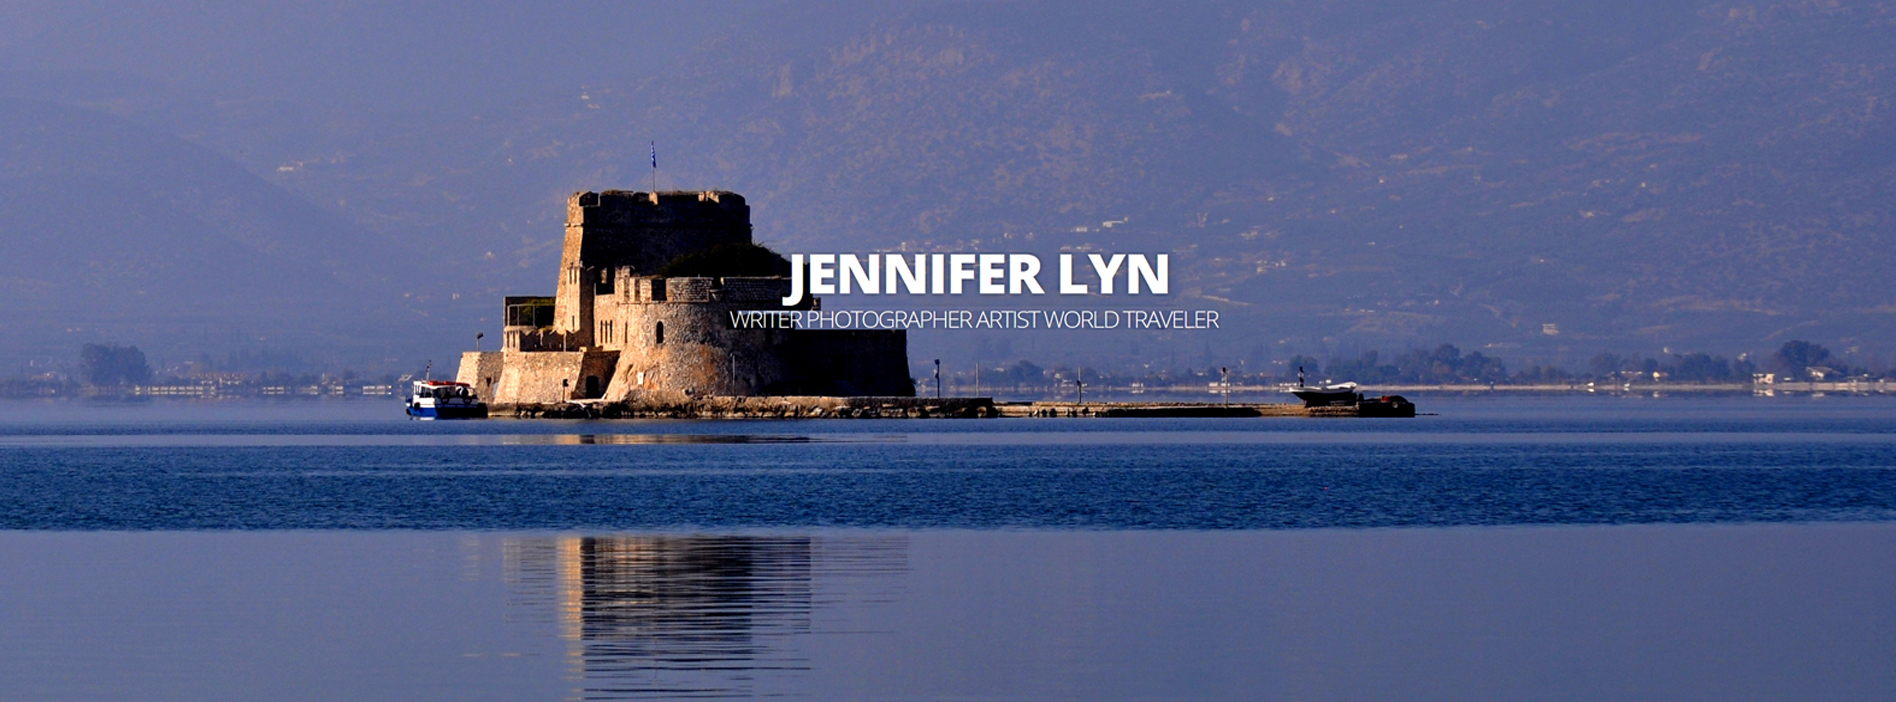 Jennifer Lyn website